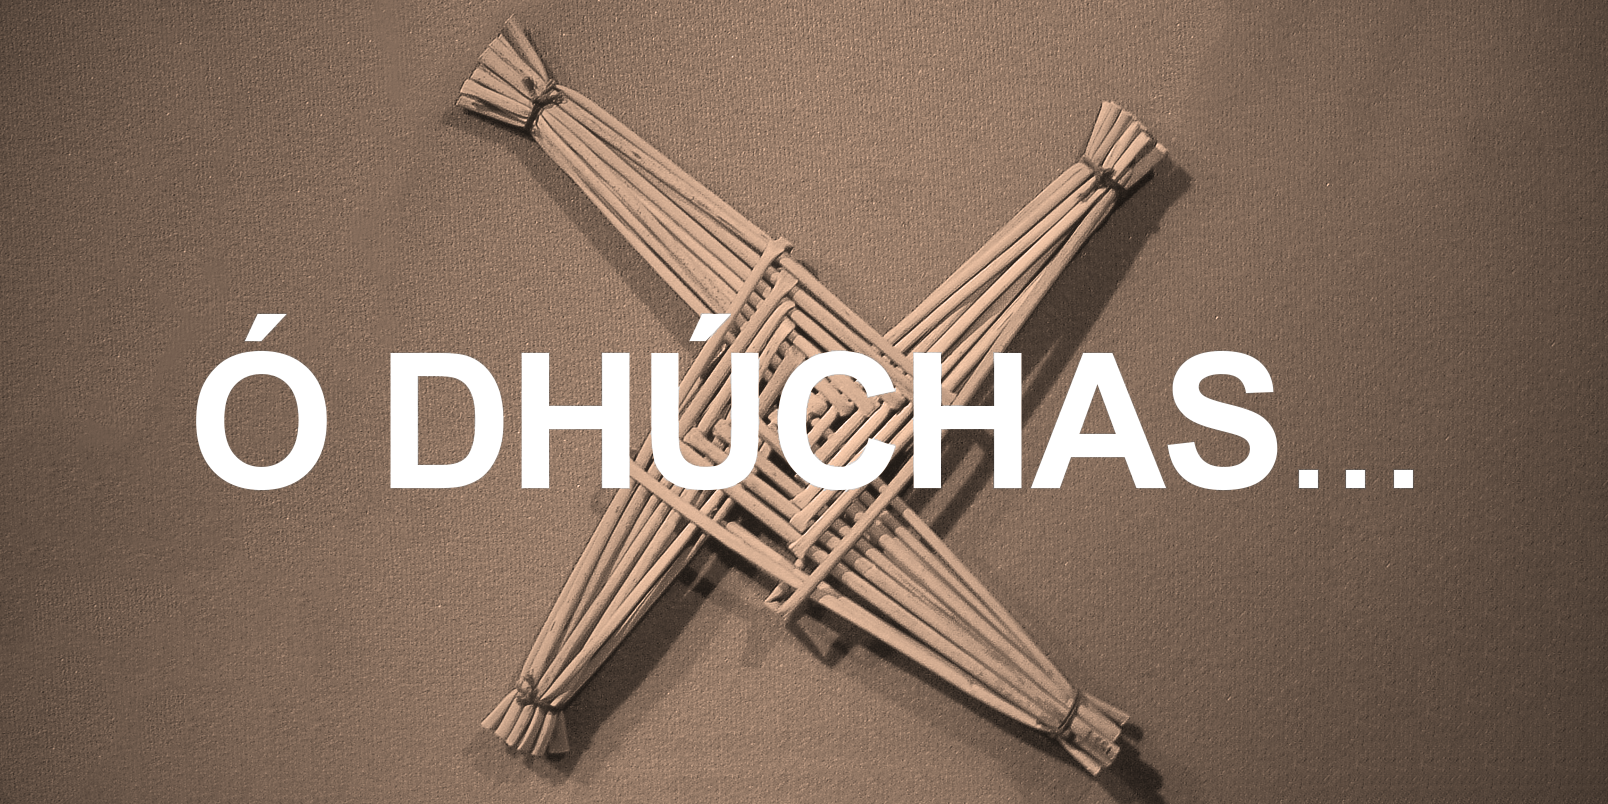 Ó DHÚCHAS: Nuair a chuaigh Bríd isteach sa chlochar bhí sí an-álainn agus an-chuthaileach